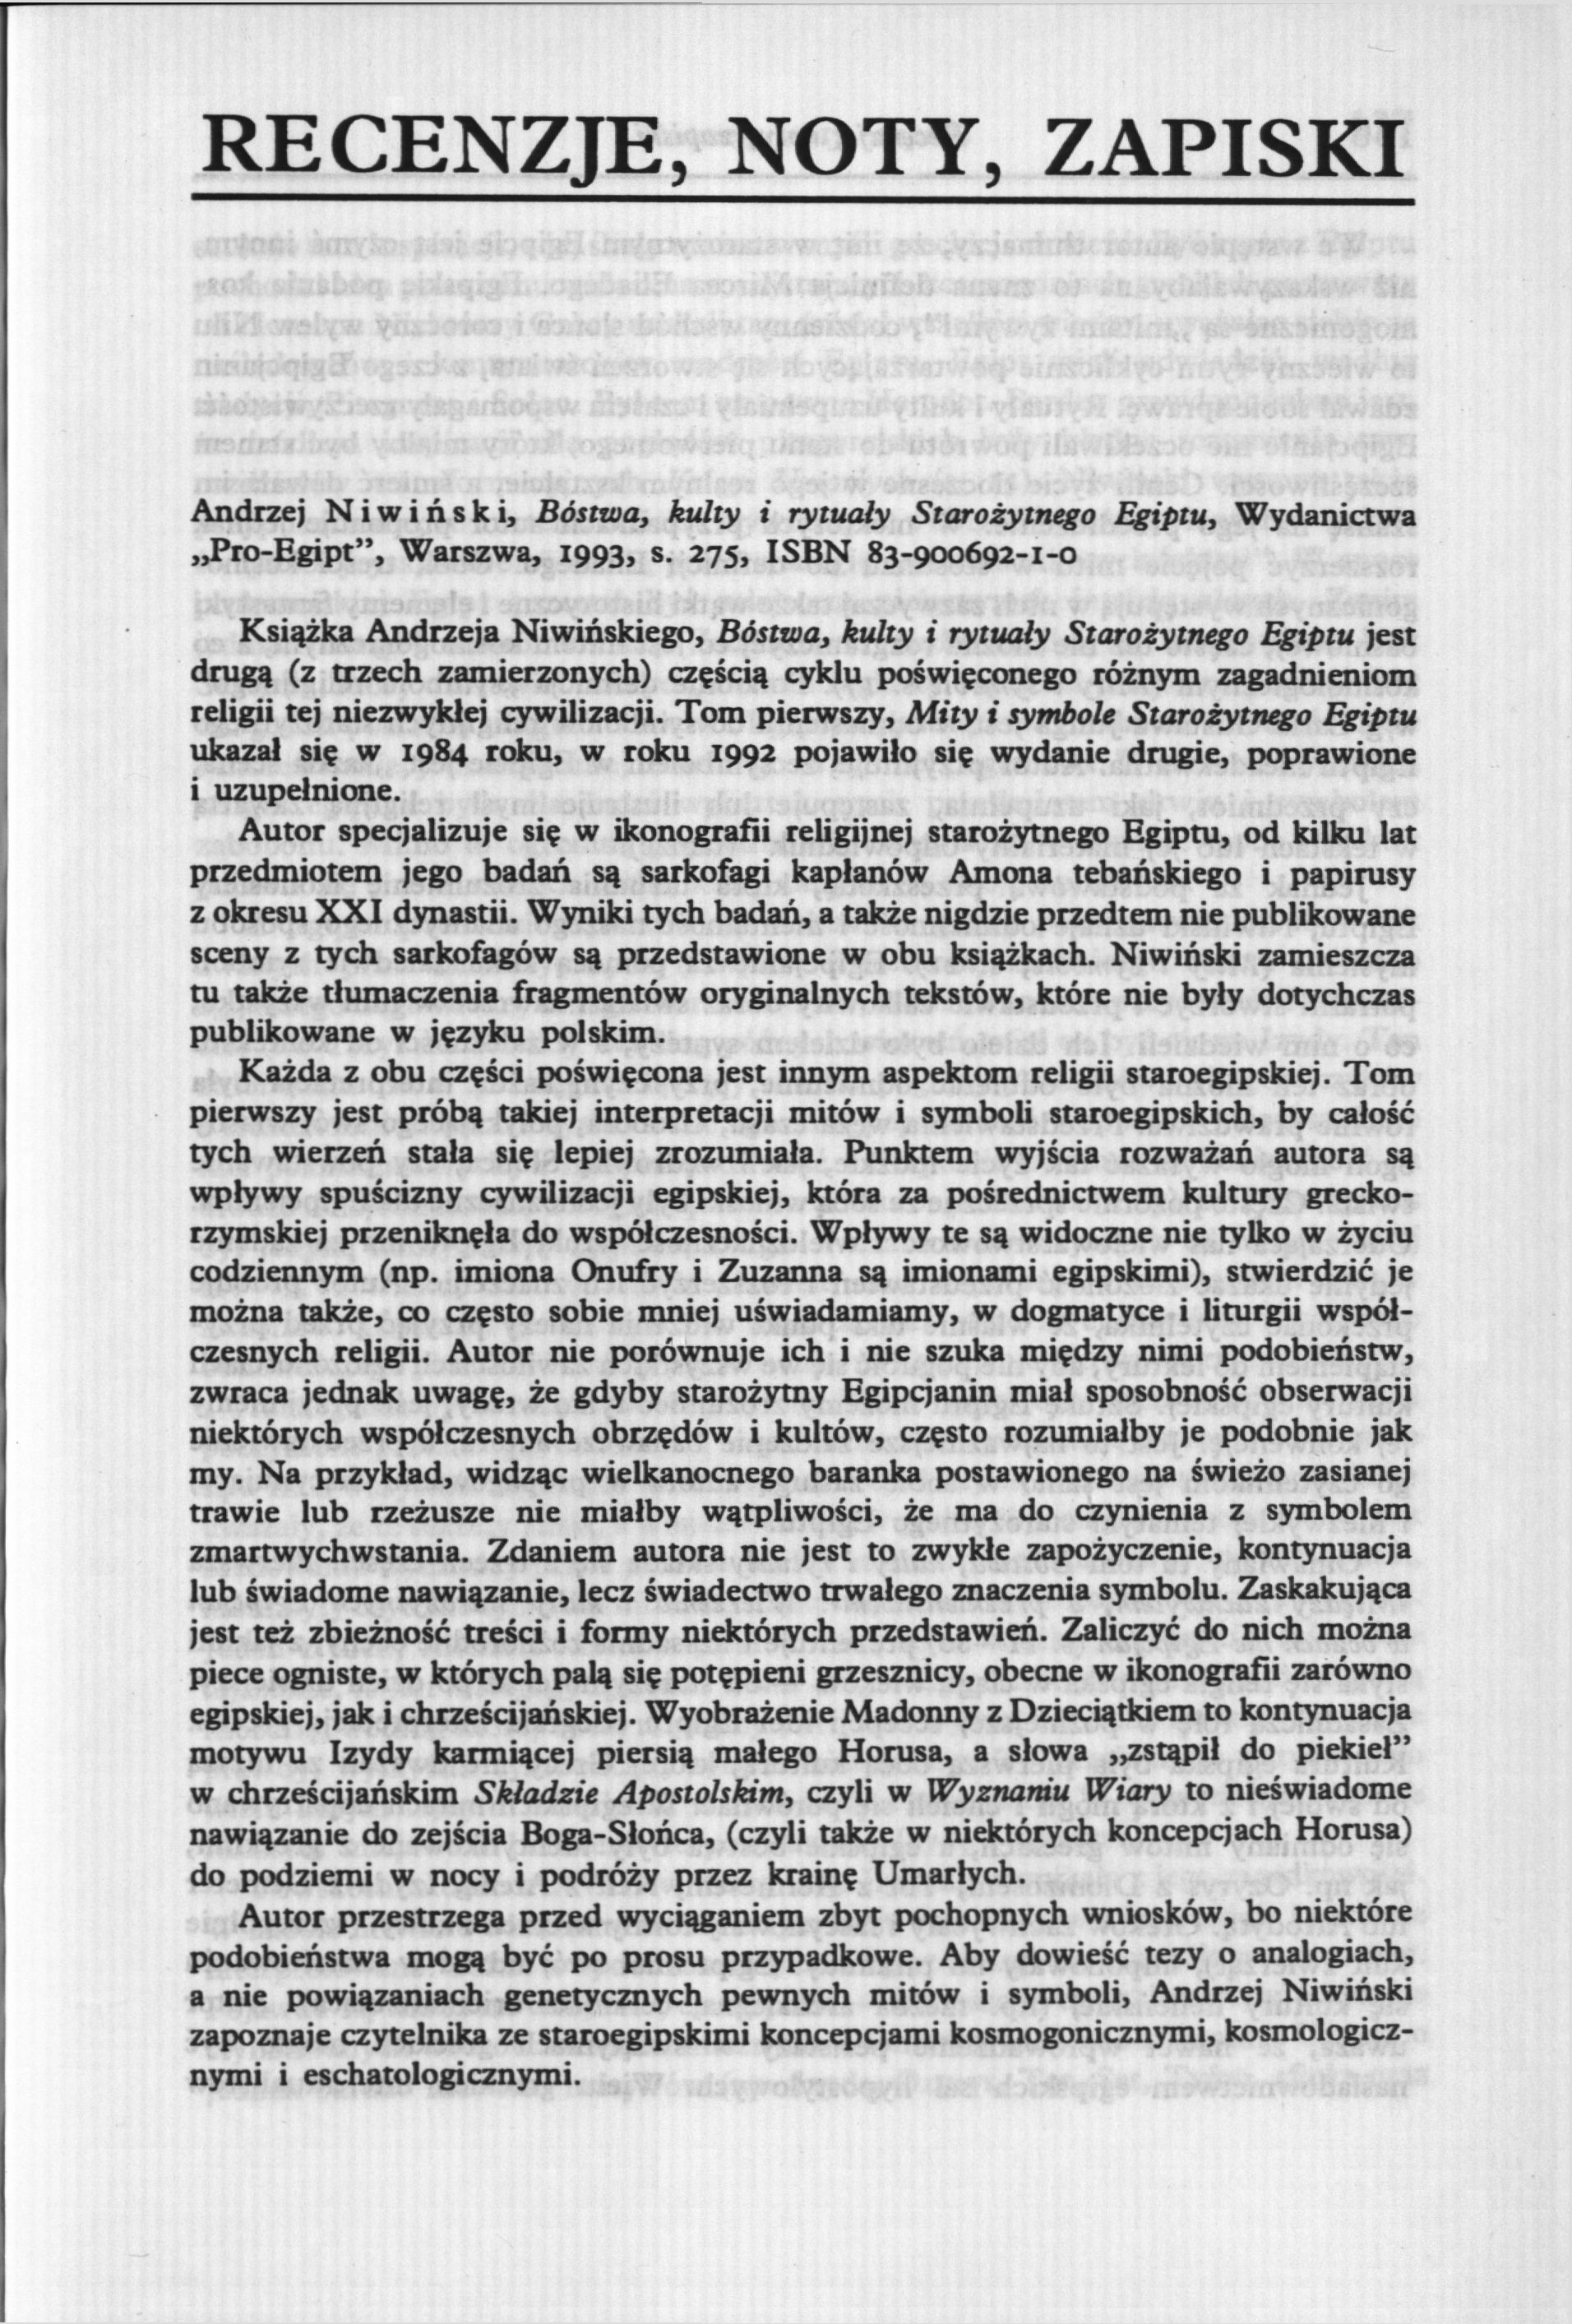 RECENZJE, NOTY, ZAPISKI Andrzej Niwiński, Bóstwa, kulty i rytuały Starożytnego Egiptu, Wydanictwa Pro-Egipt", Warszwa, 1993, s.